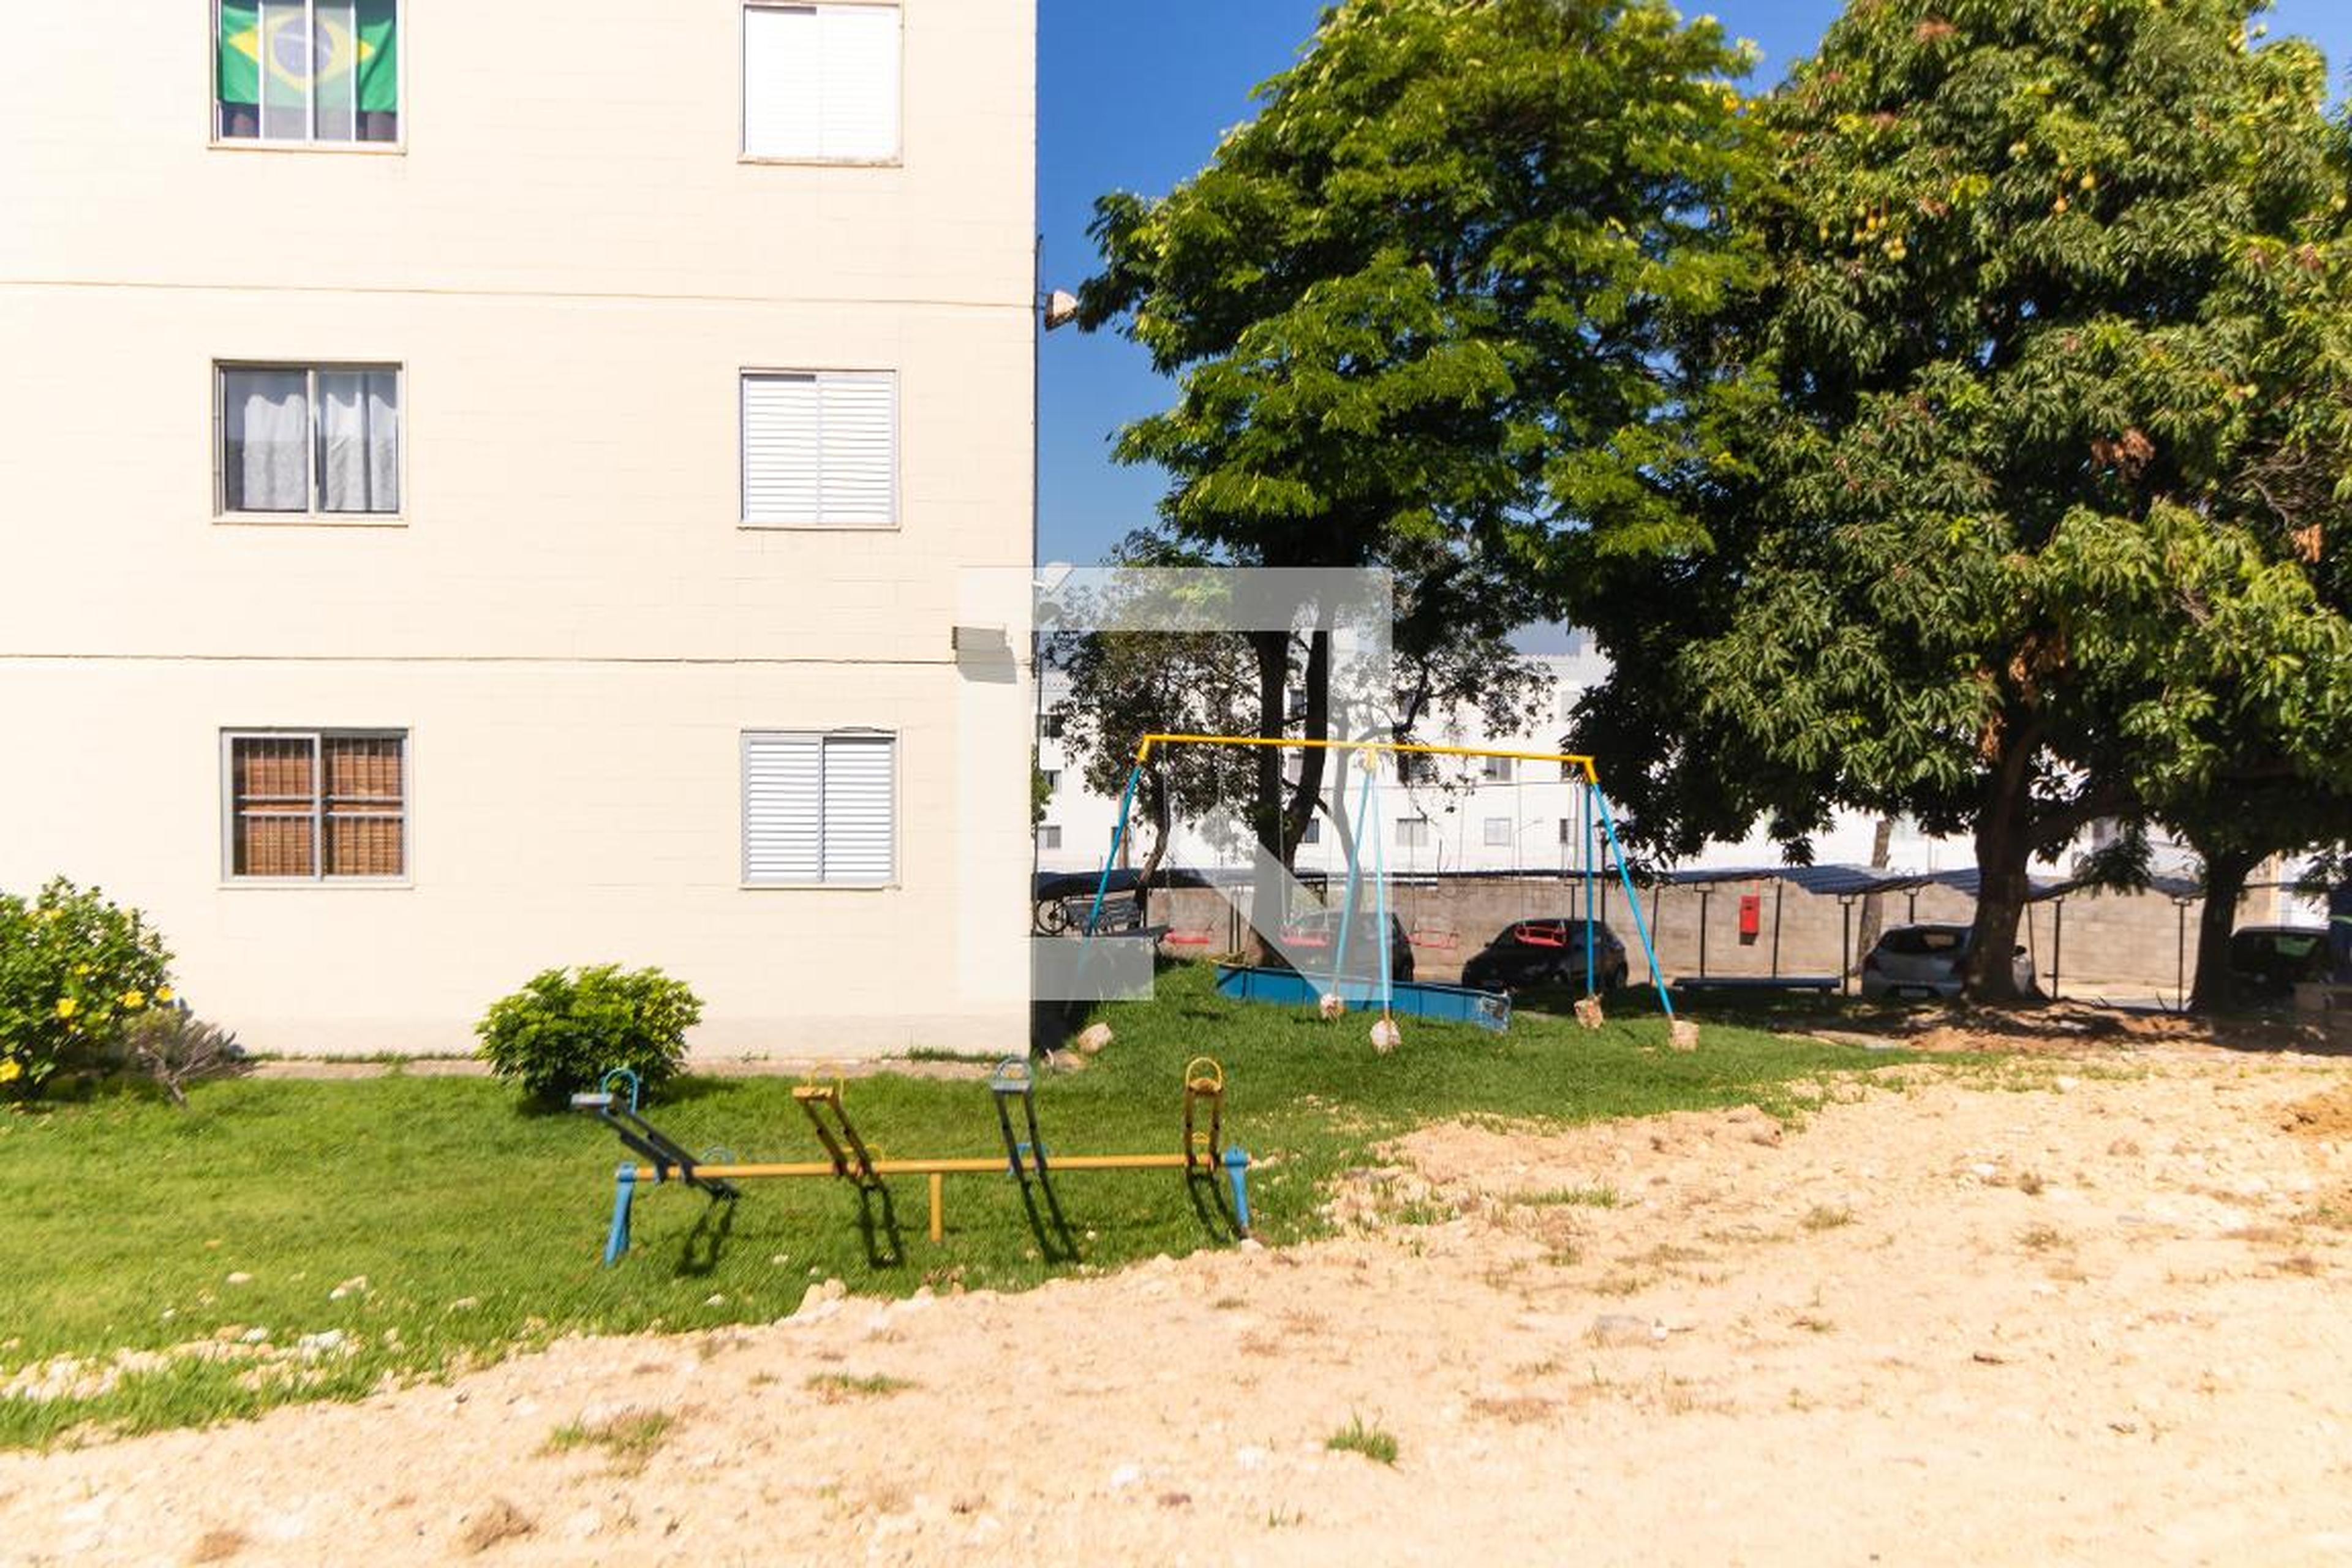 Área comum - Playground - Edifício Jardim Souza Queiroz  D1